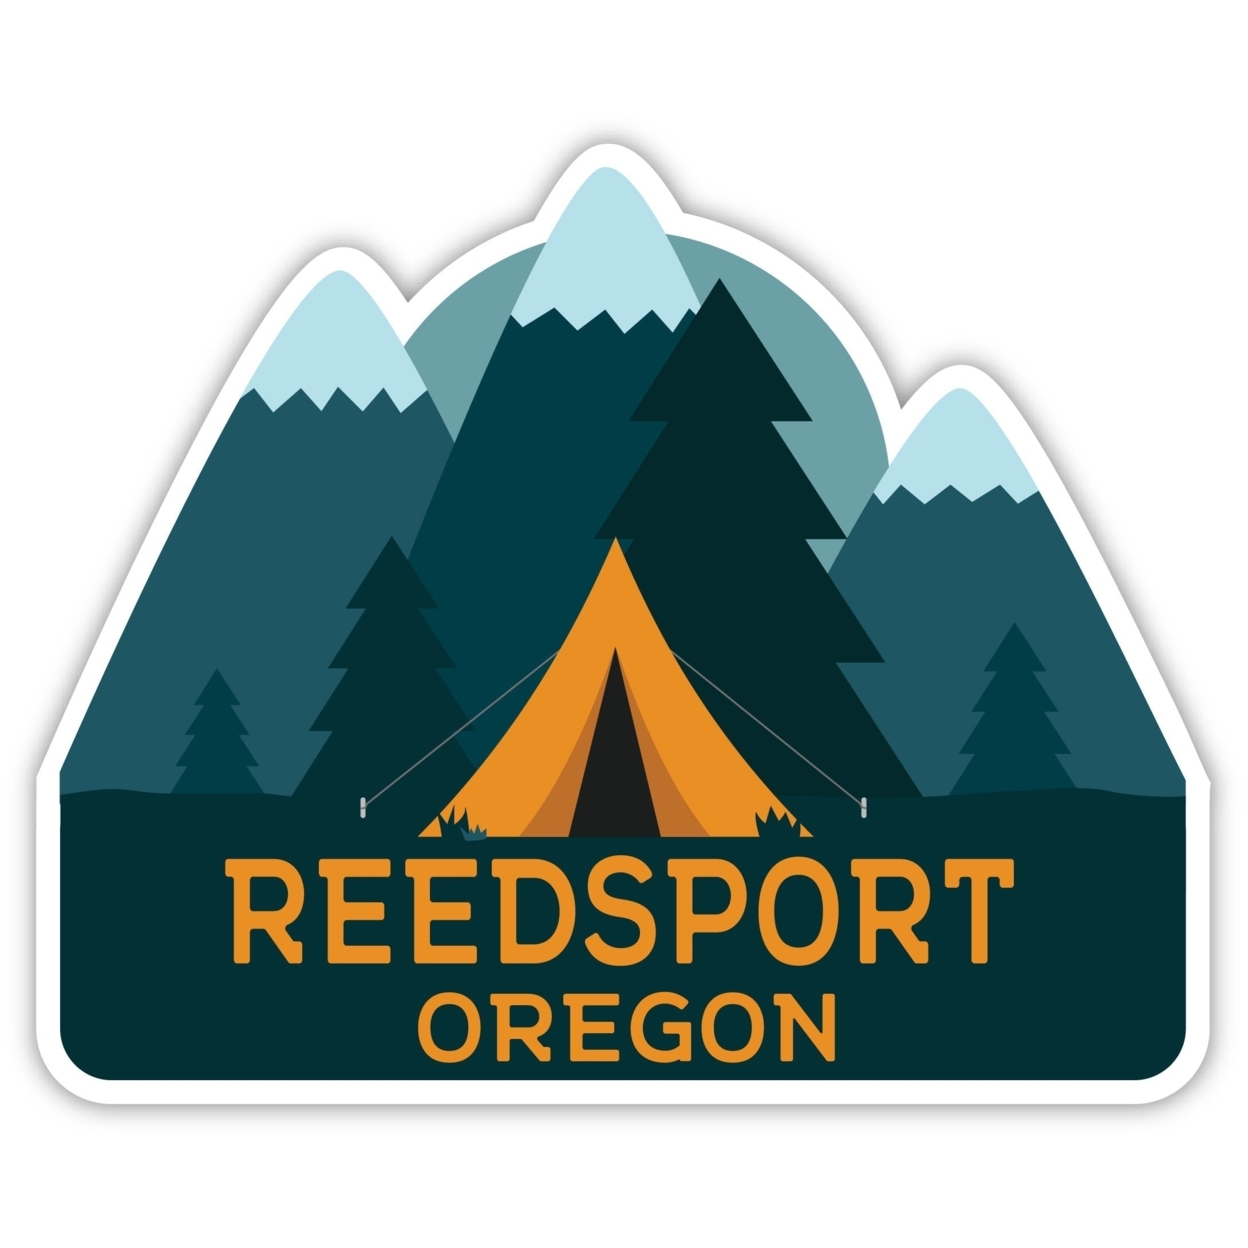 Reedsport Oregon Souvenir Decorative Stickers (Choose Theme And Size) - Single Unit, 4-Inch, Tent